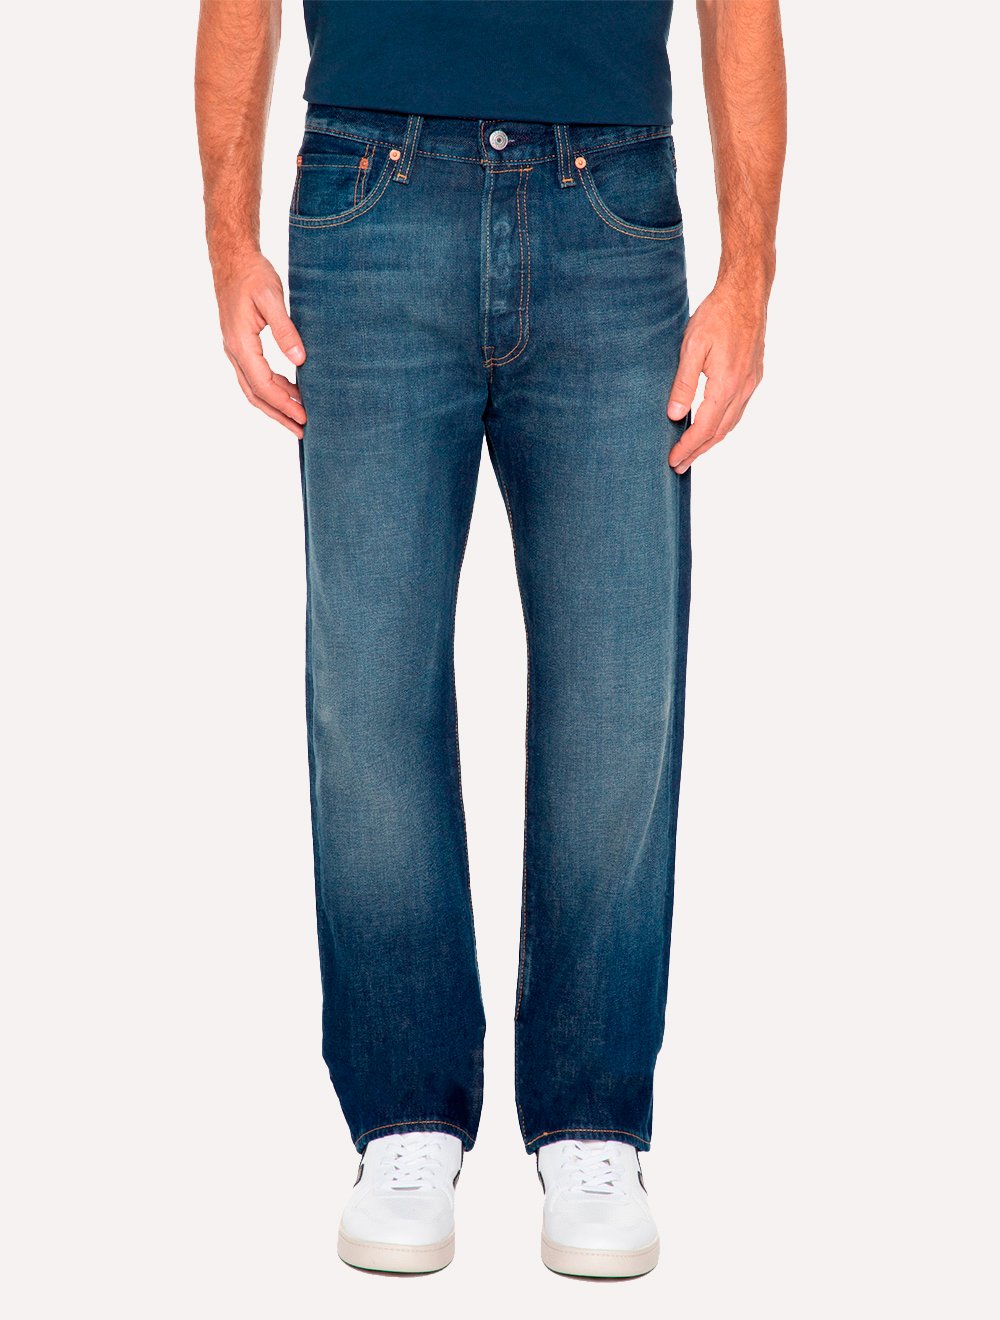 Calça Levis Jeans Masculina 511 Slim Stretch Greenish Azul Escuro